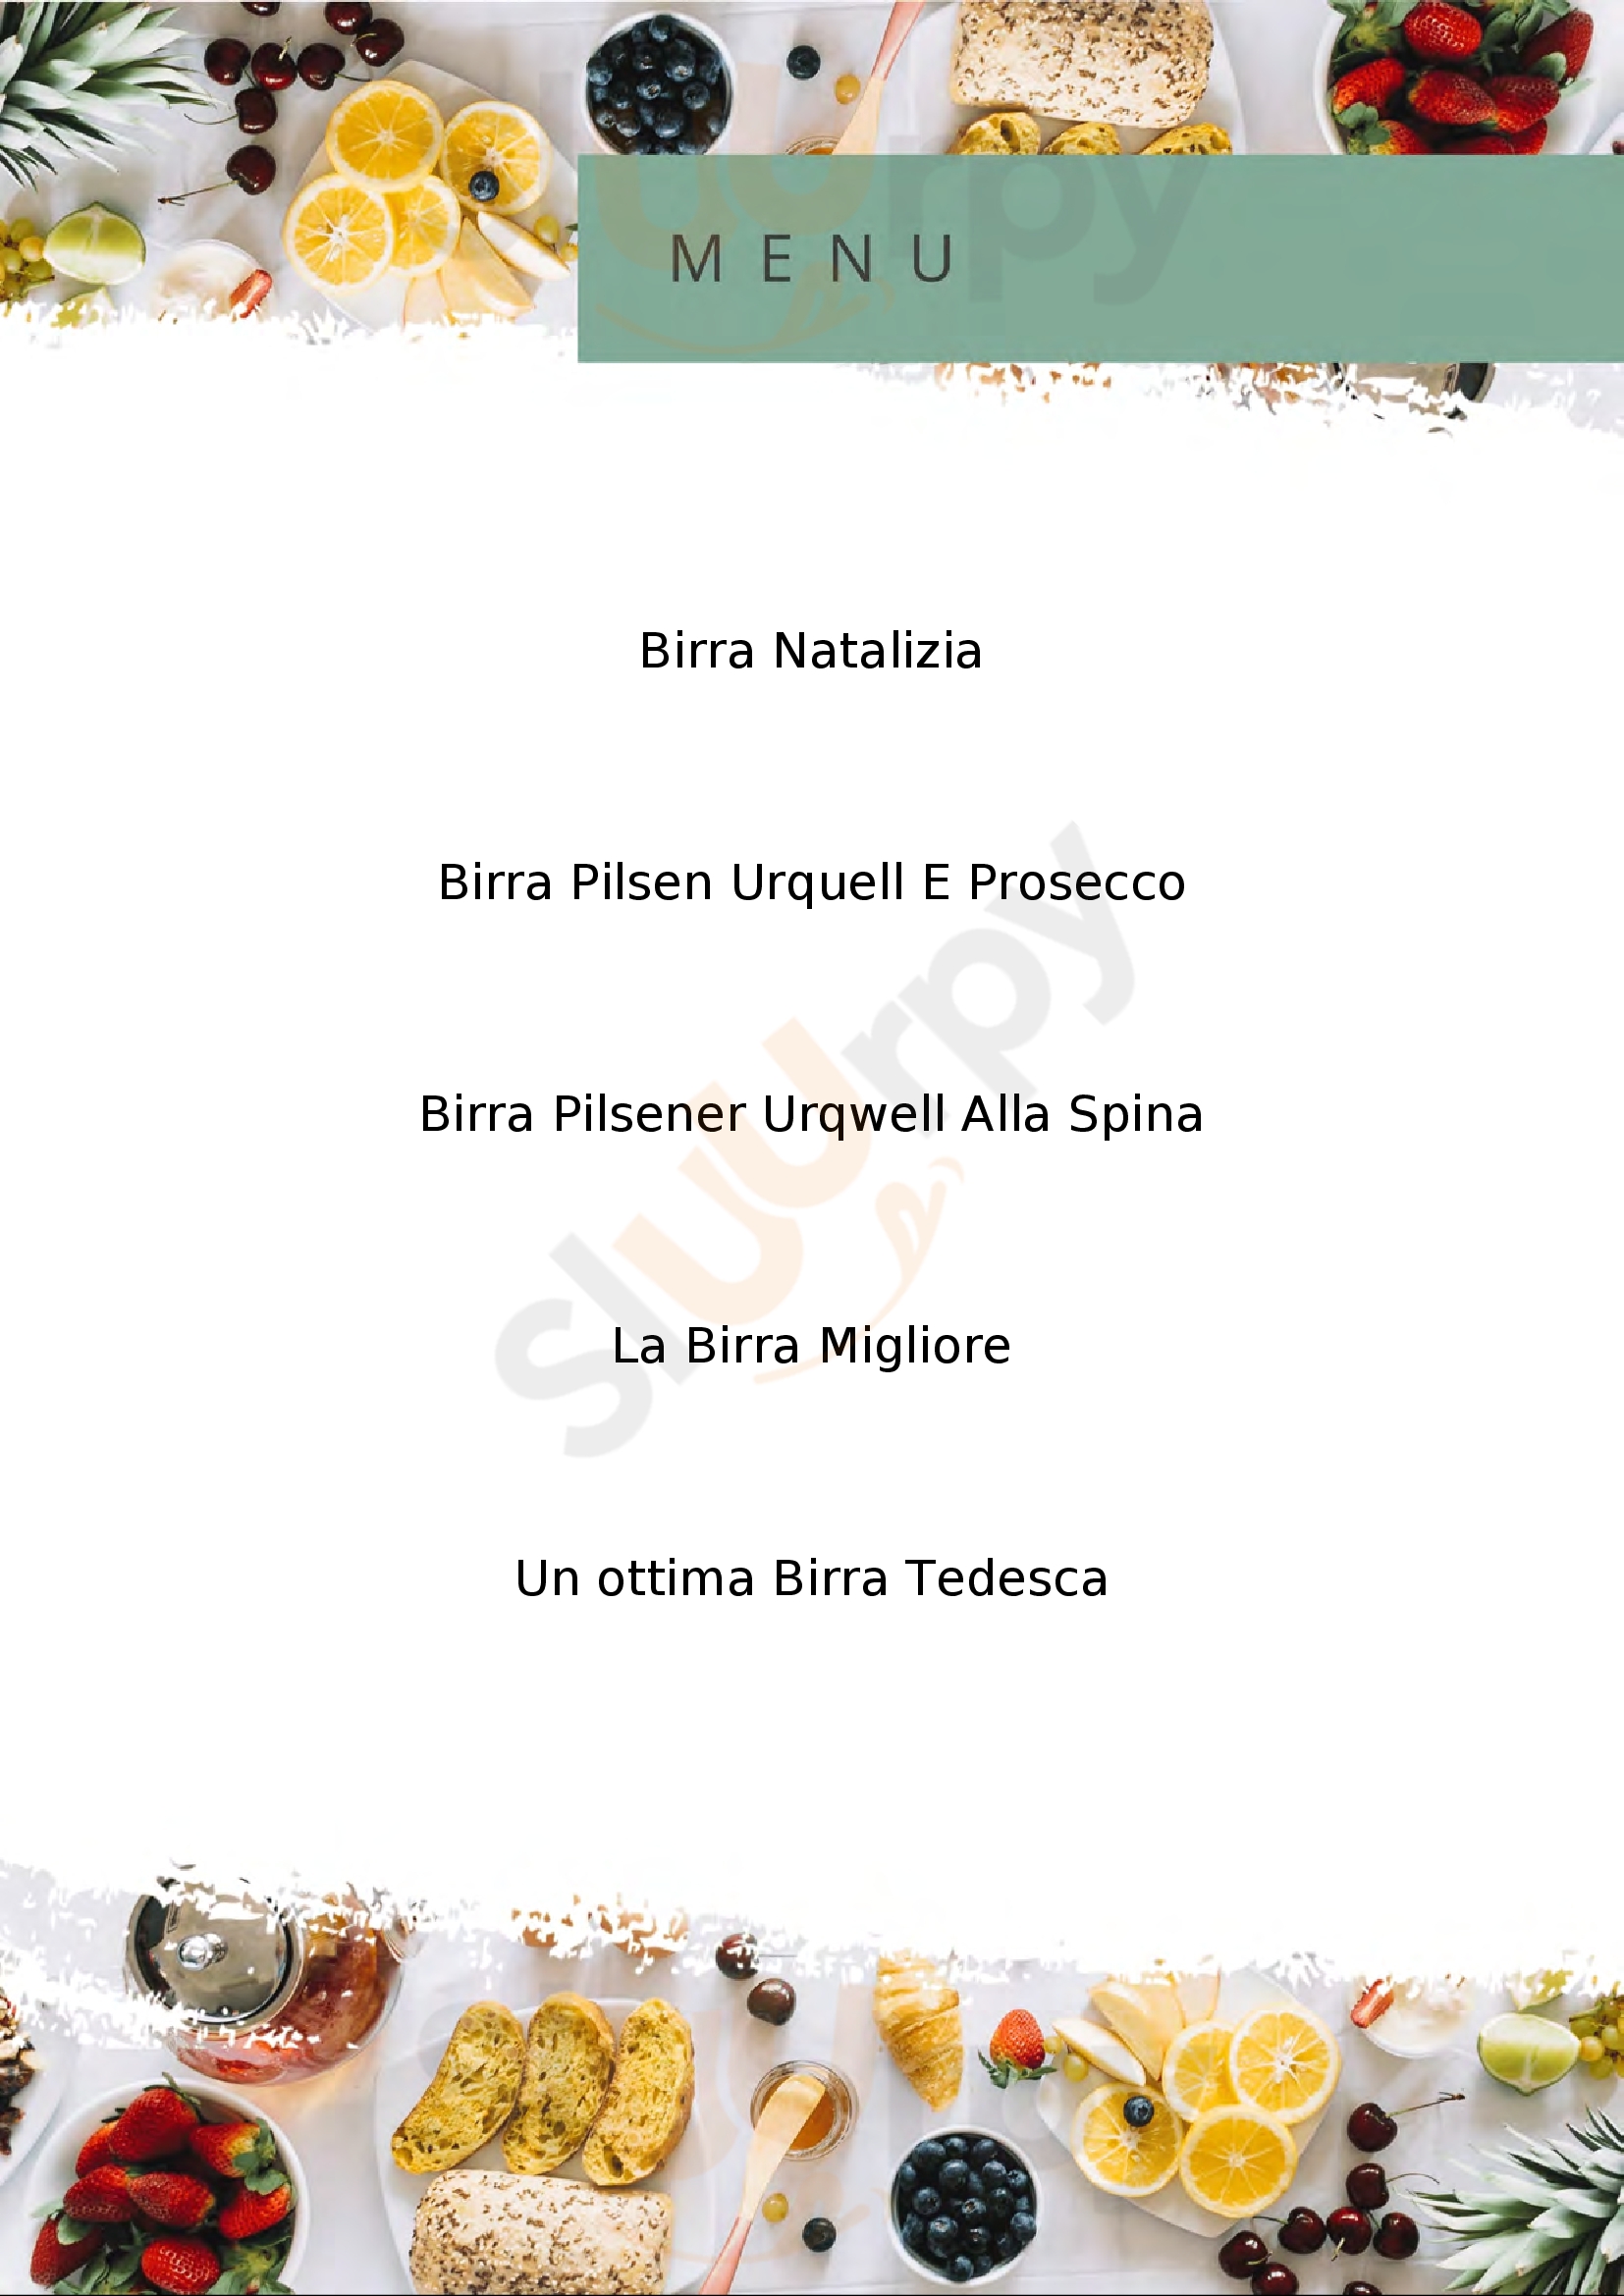 Birreria Piazzetta Brozzi Fano menù 1 pagina